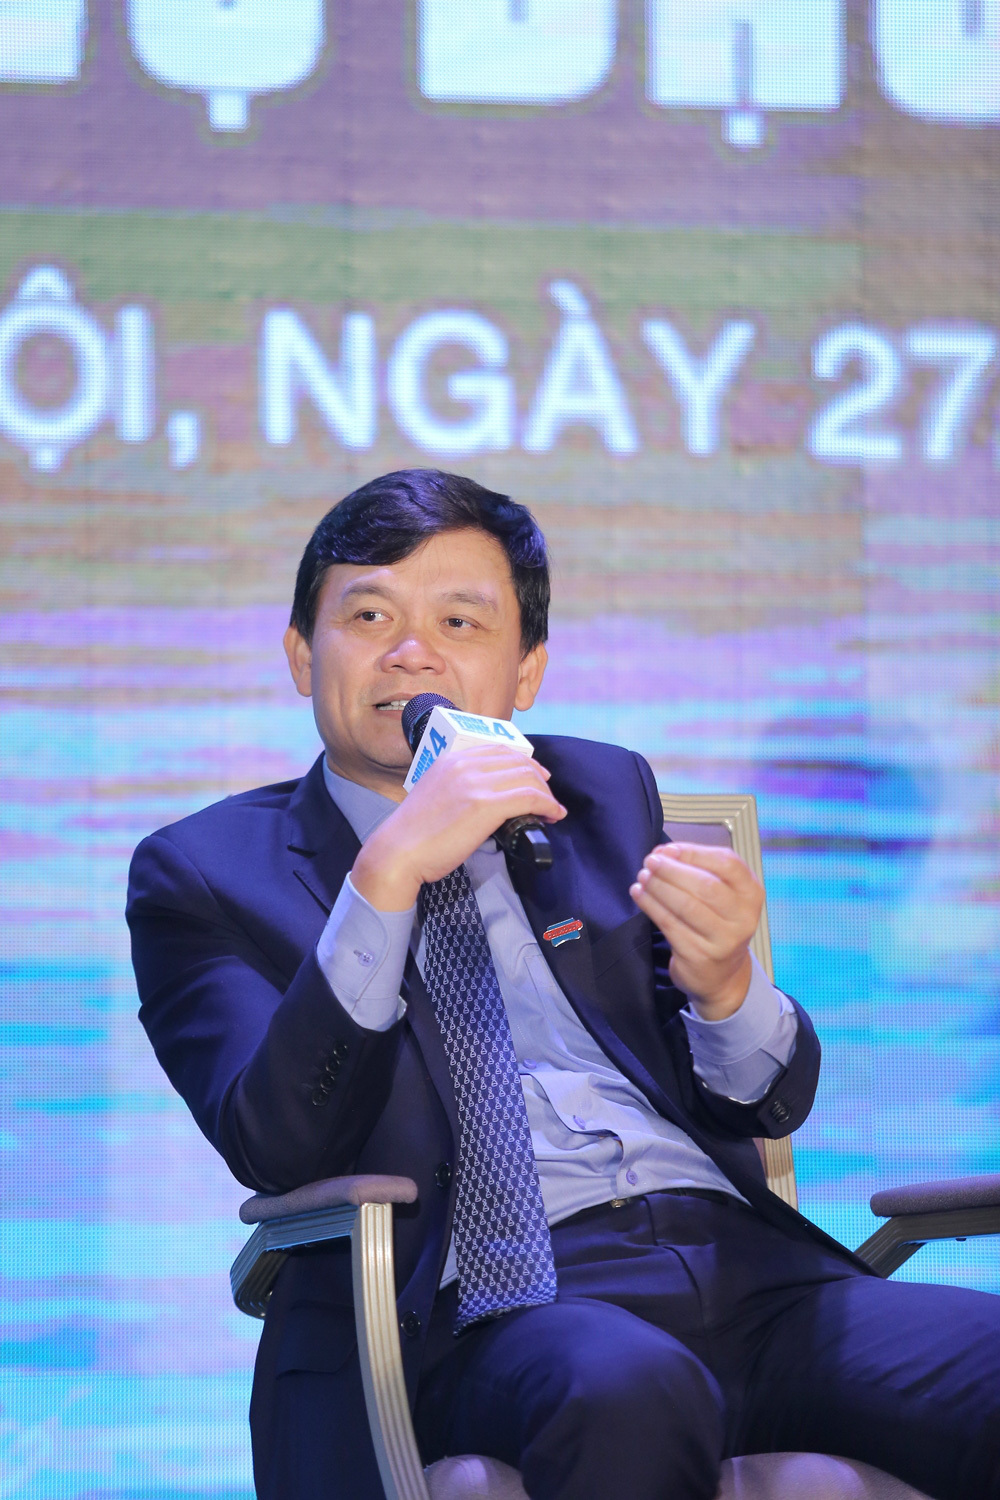  
Ông Nguyễn Xuân Phú quyết định vẫn sẽ gắn bó với chương trình để hỗ trợ những bạn trẻ khởi nghiệp. (Ảnh: VTV)